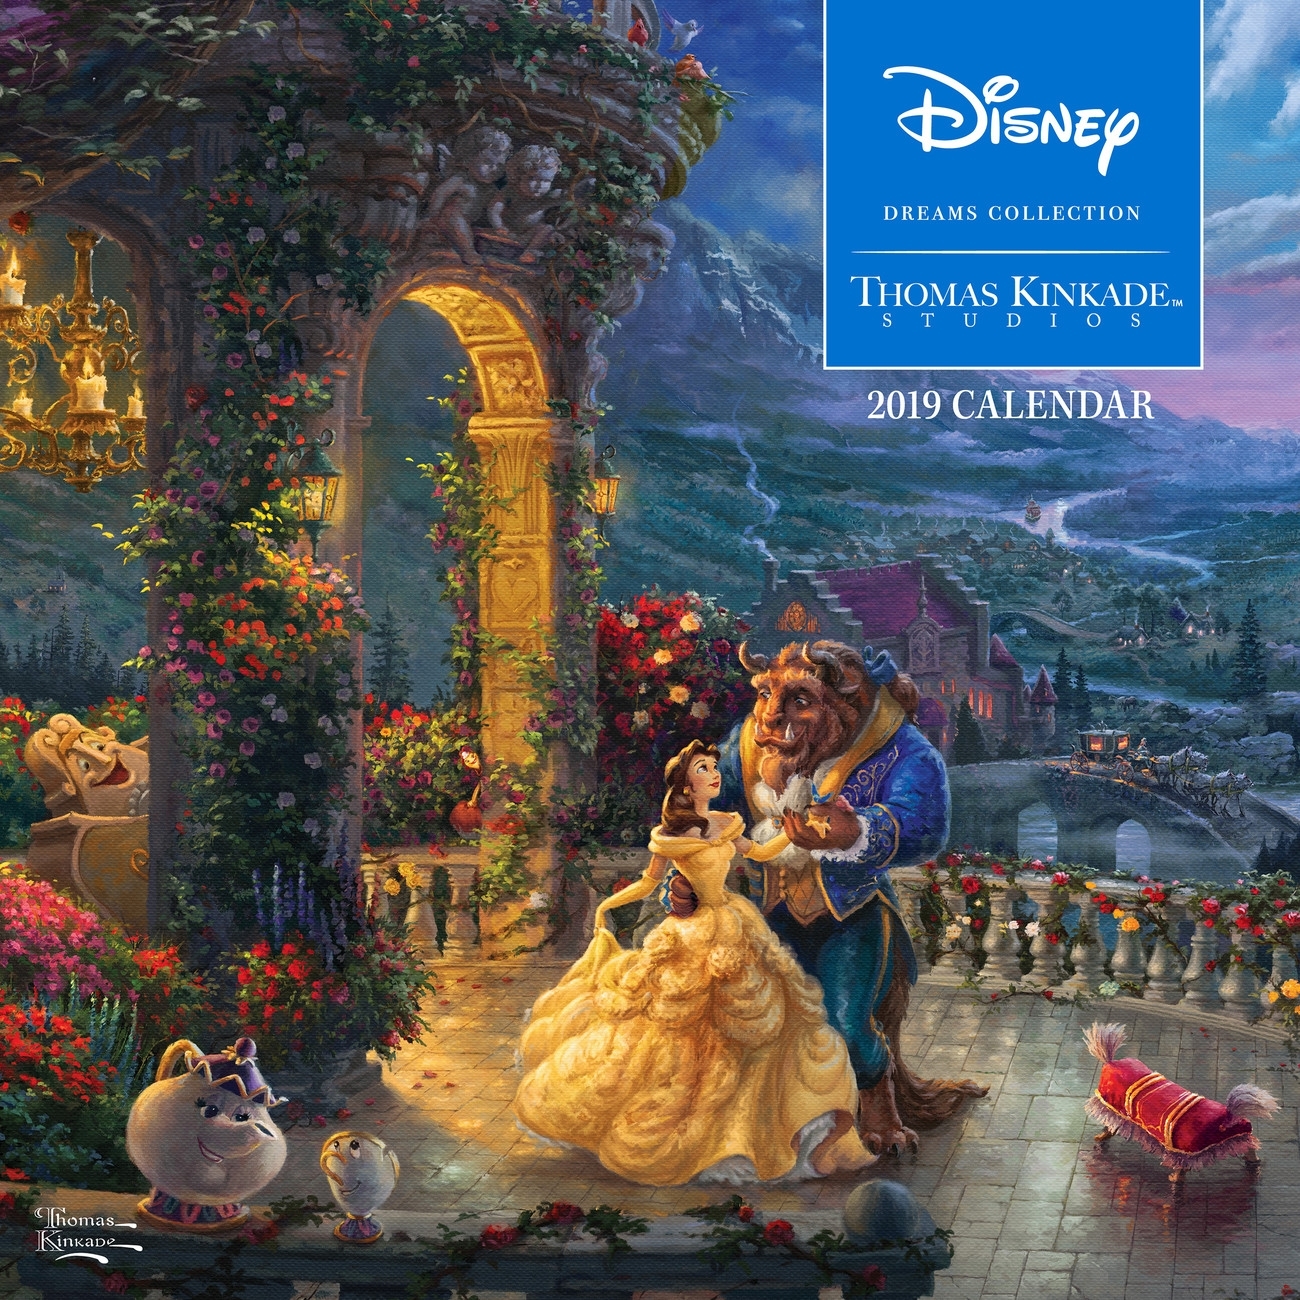 Thomas Kinkade - The Disney Dreams Collection - Calendars